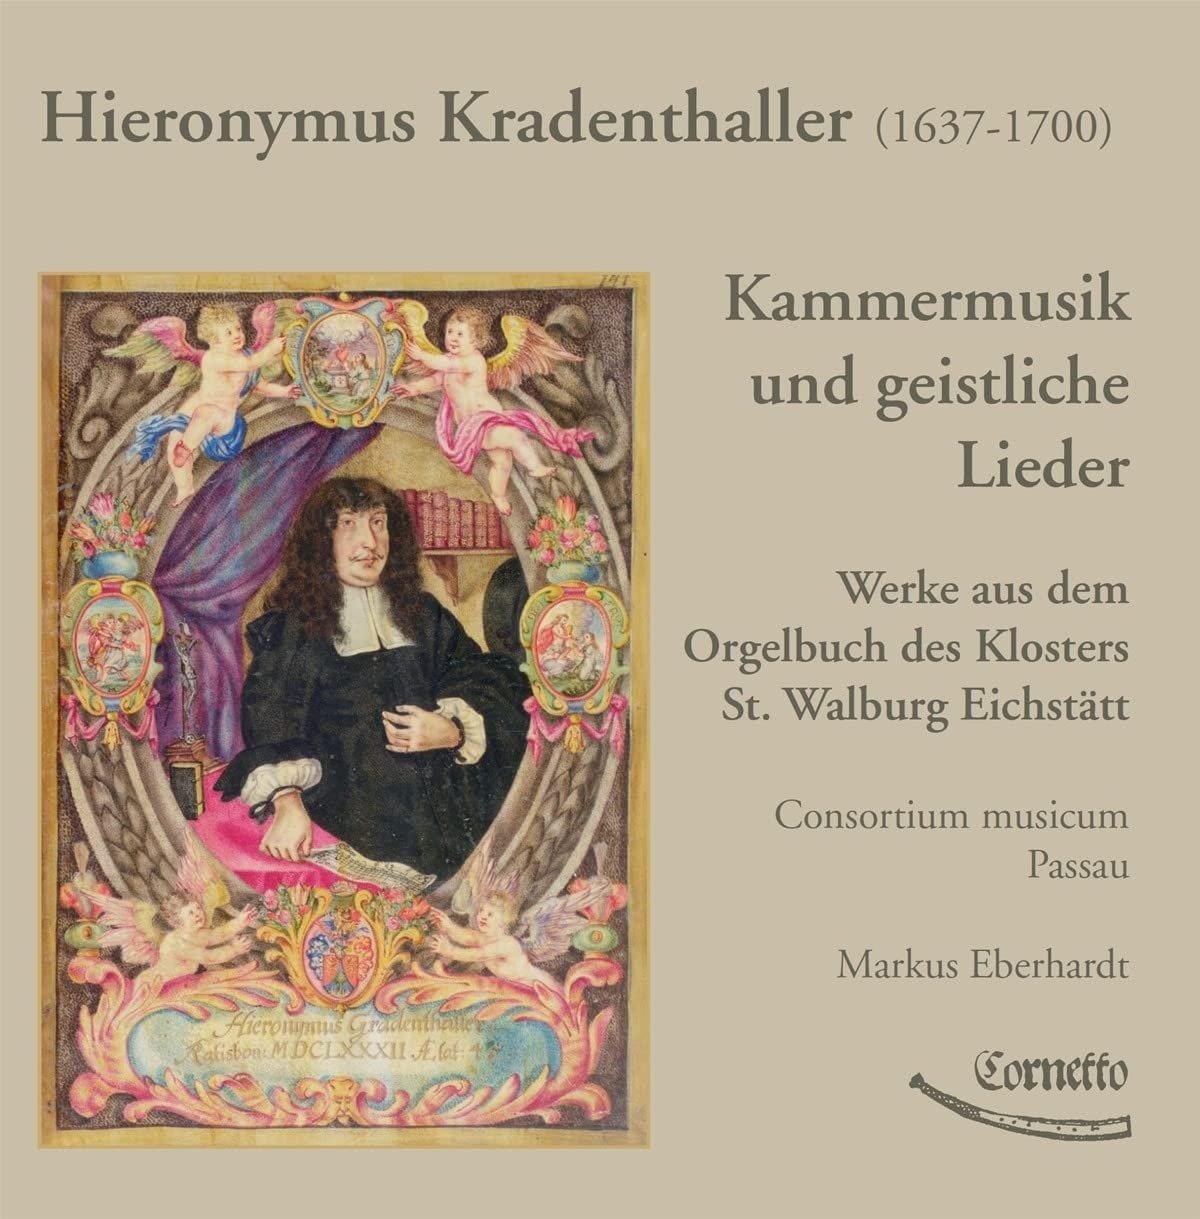 CD Shop - CONSORTIUM MUSICUM PASSAU KRADENTHALLER: KAMMERMUSIK UND GEISTLICHE LIEDER